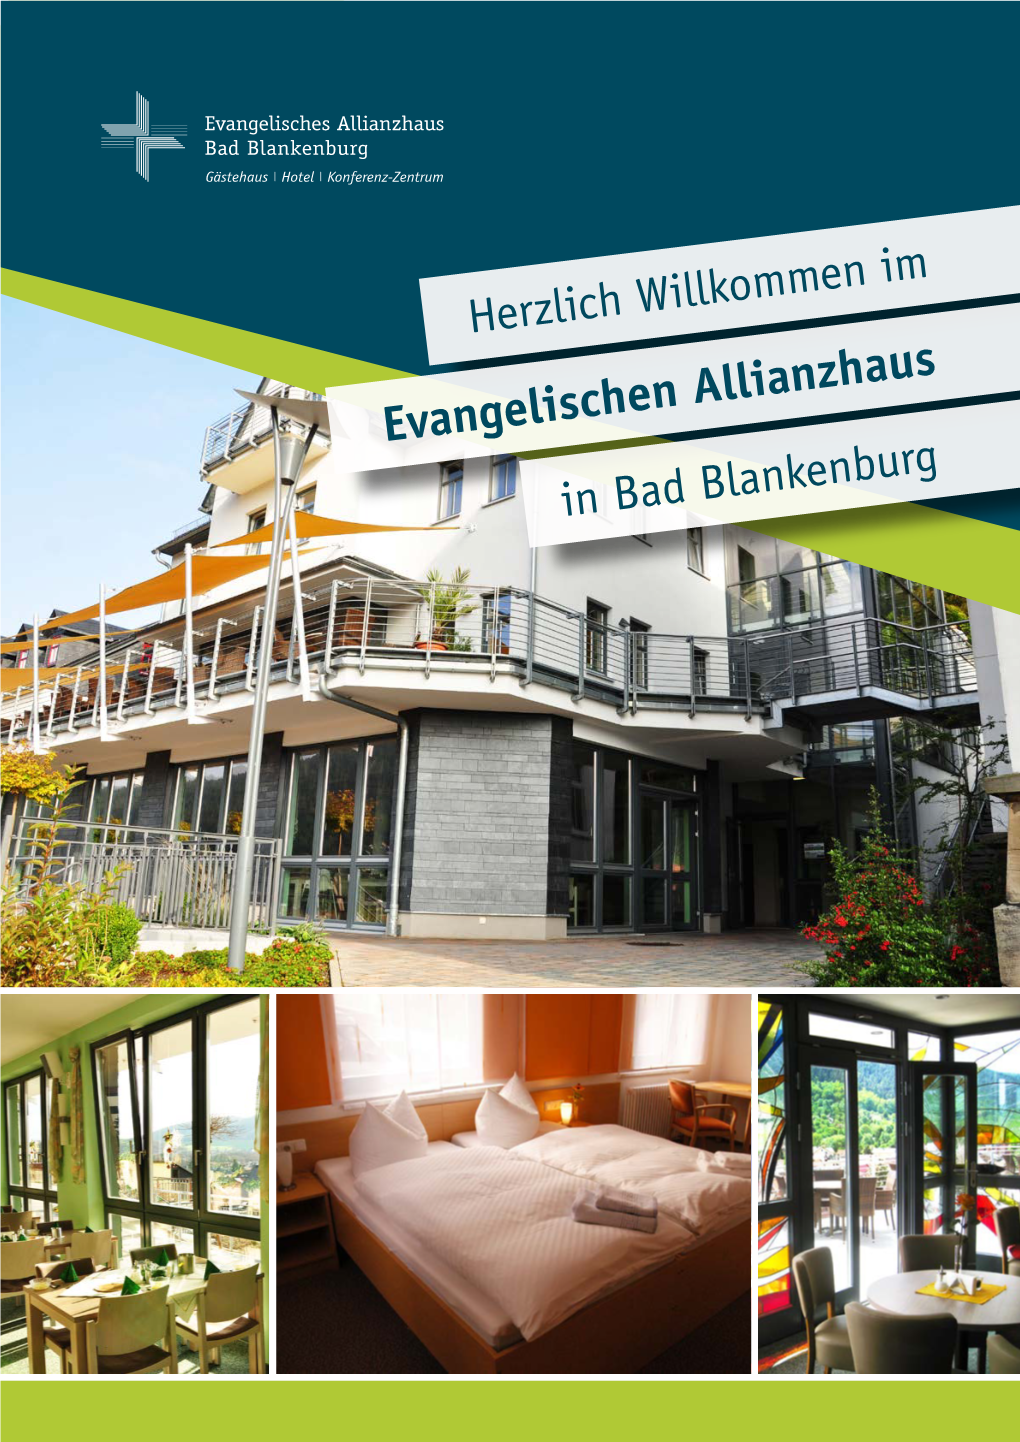 Evangelischen Allianzhaus in Bad Blankenburg Liebe Gäste